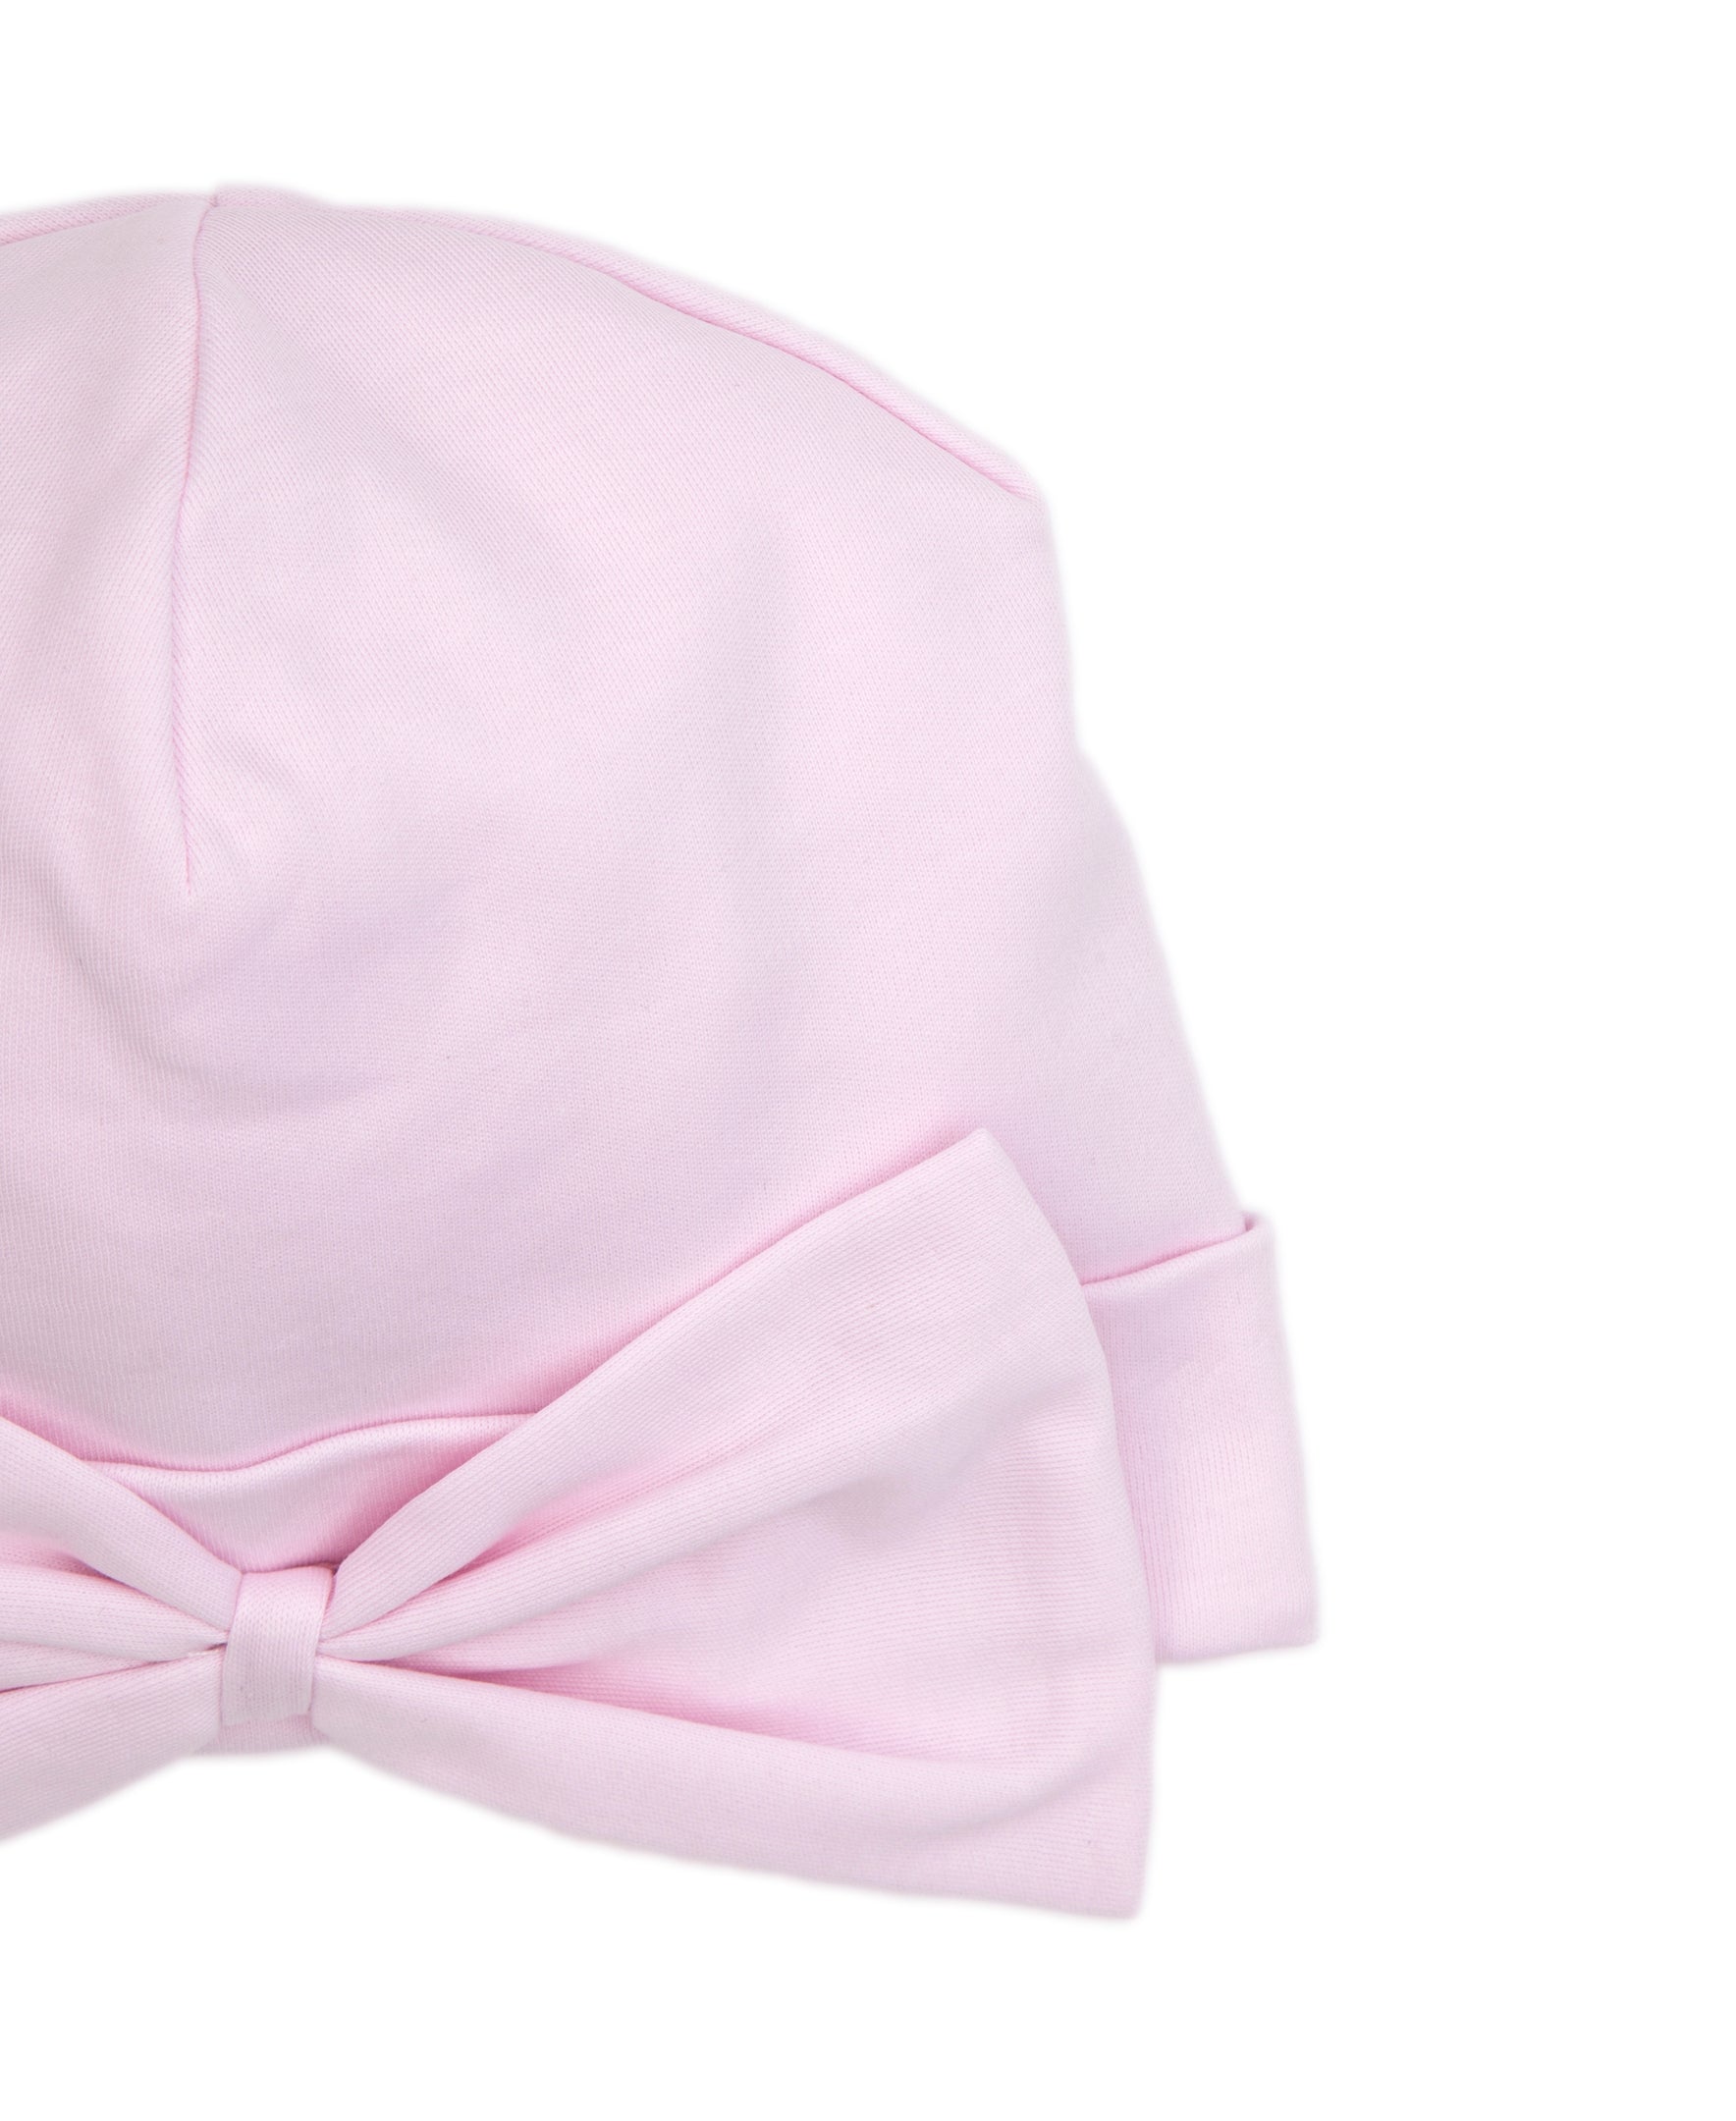 Kissy Basic Pink Hat Novelty - Kissy Kissy